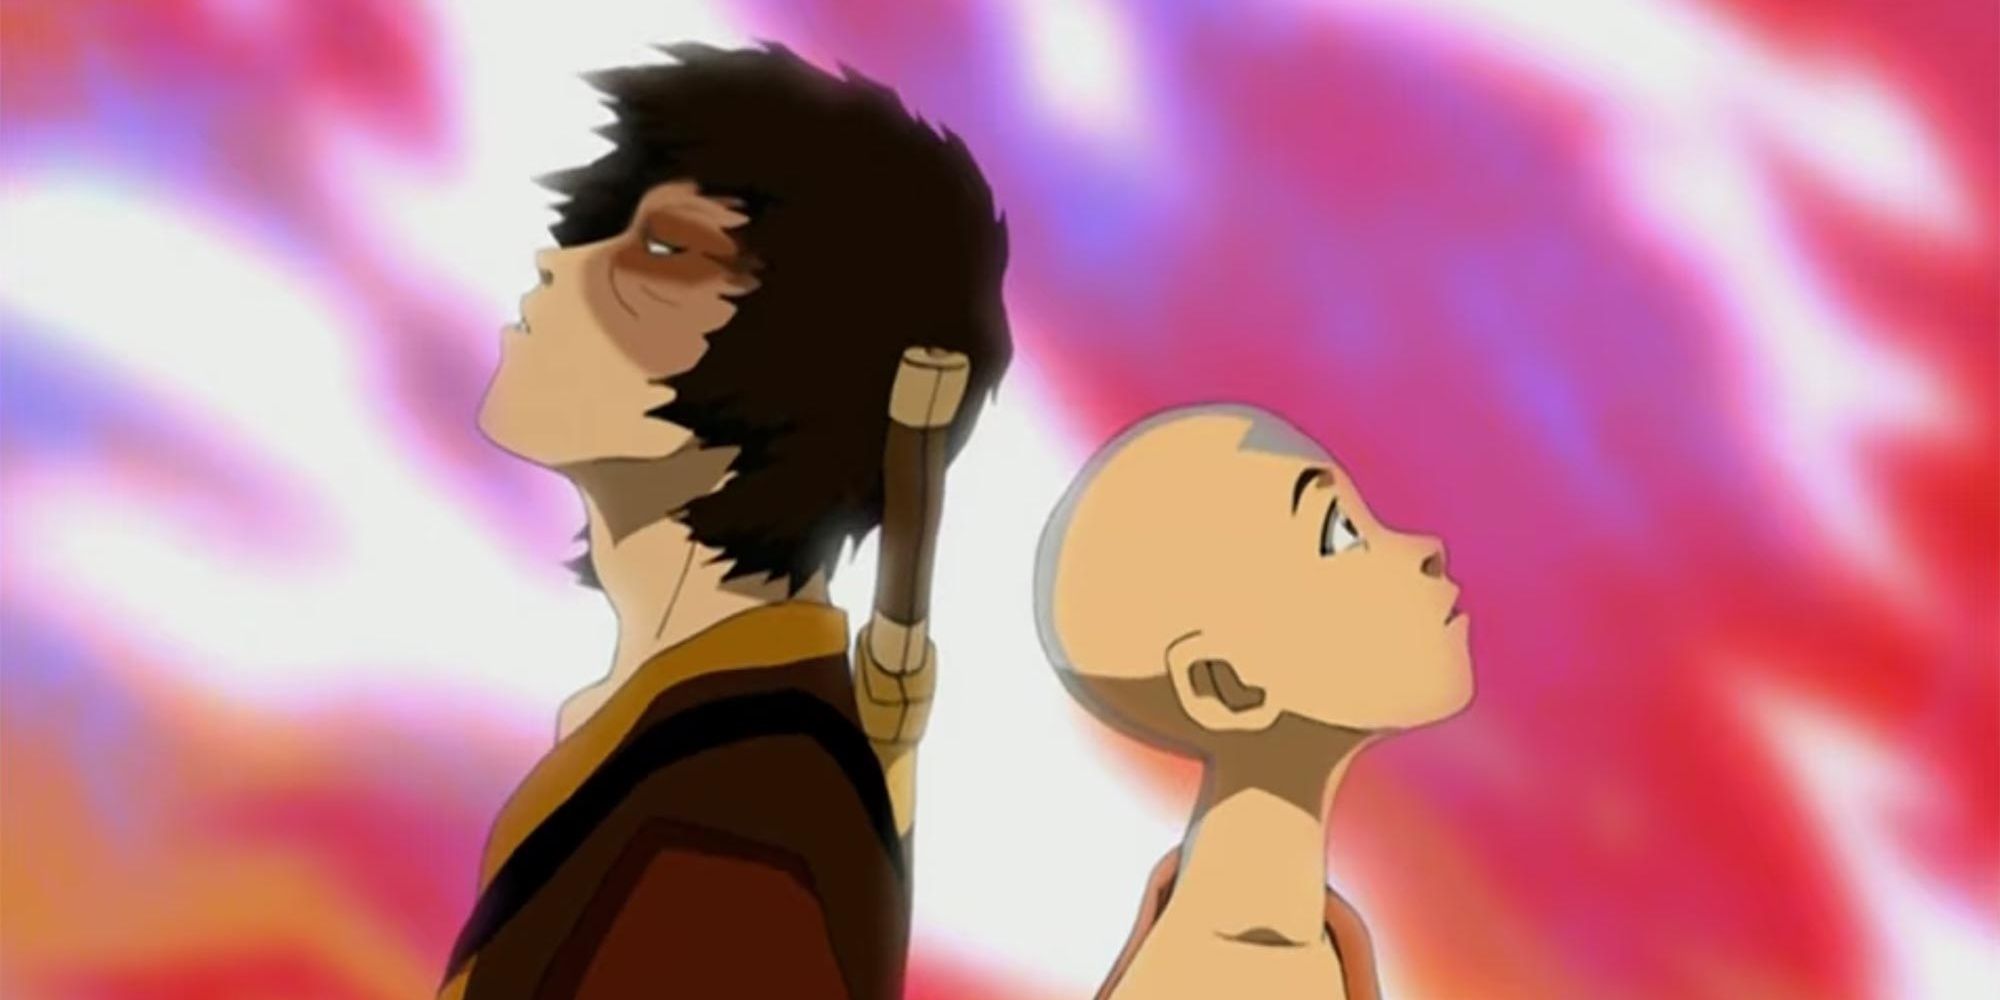 Avatar The Last Airbender  Aangs 10 Best Episodes